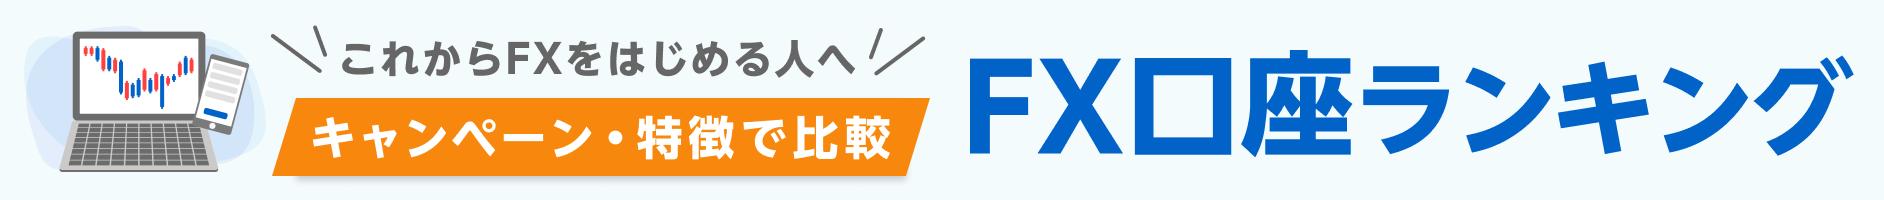 これからFXをはじめる人へ キャンペーン・特徴で比較 FXランキング